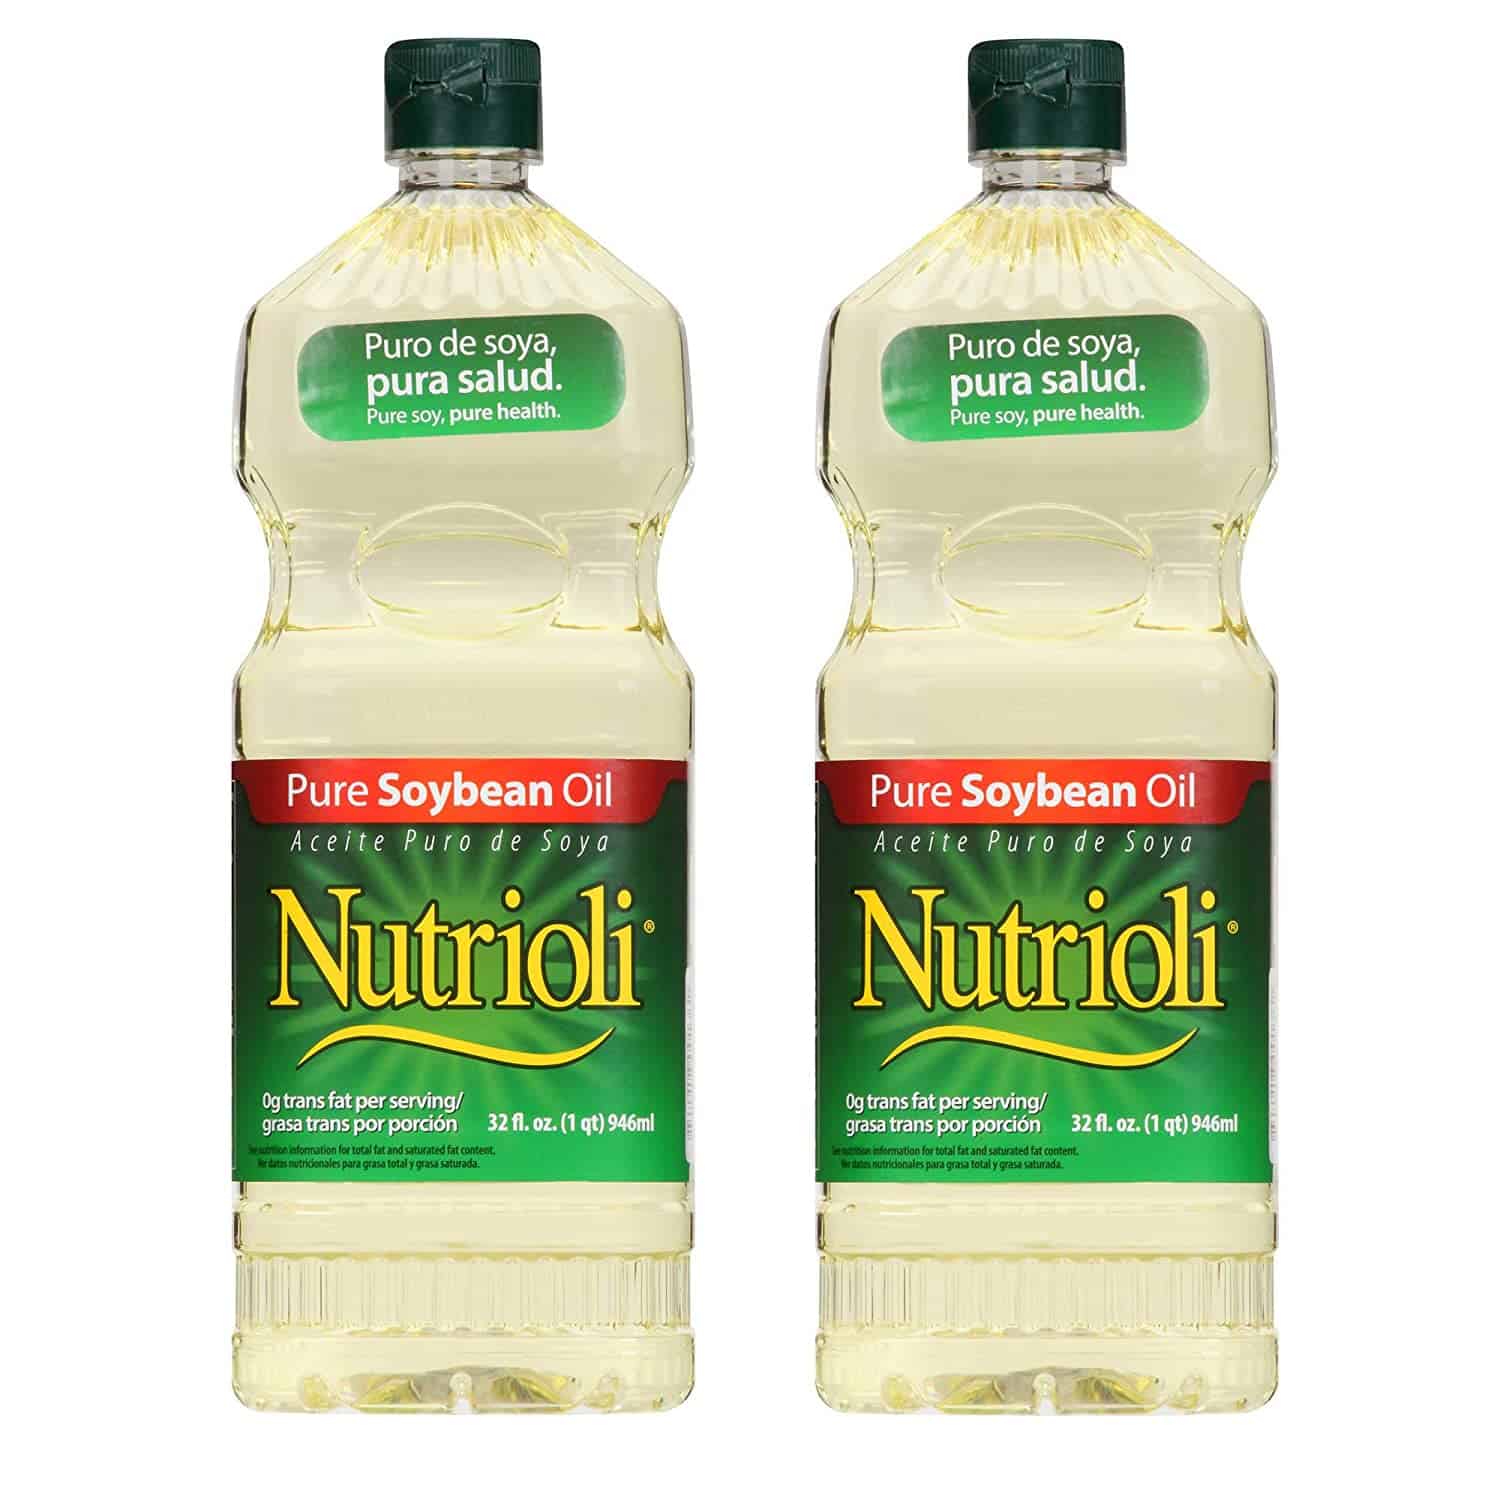 น้ำมันทอดแบบดั้งเดิมที่ดีที่สุด: น้ำมันถั่วเหลืองโดย Nutrioli